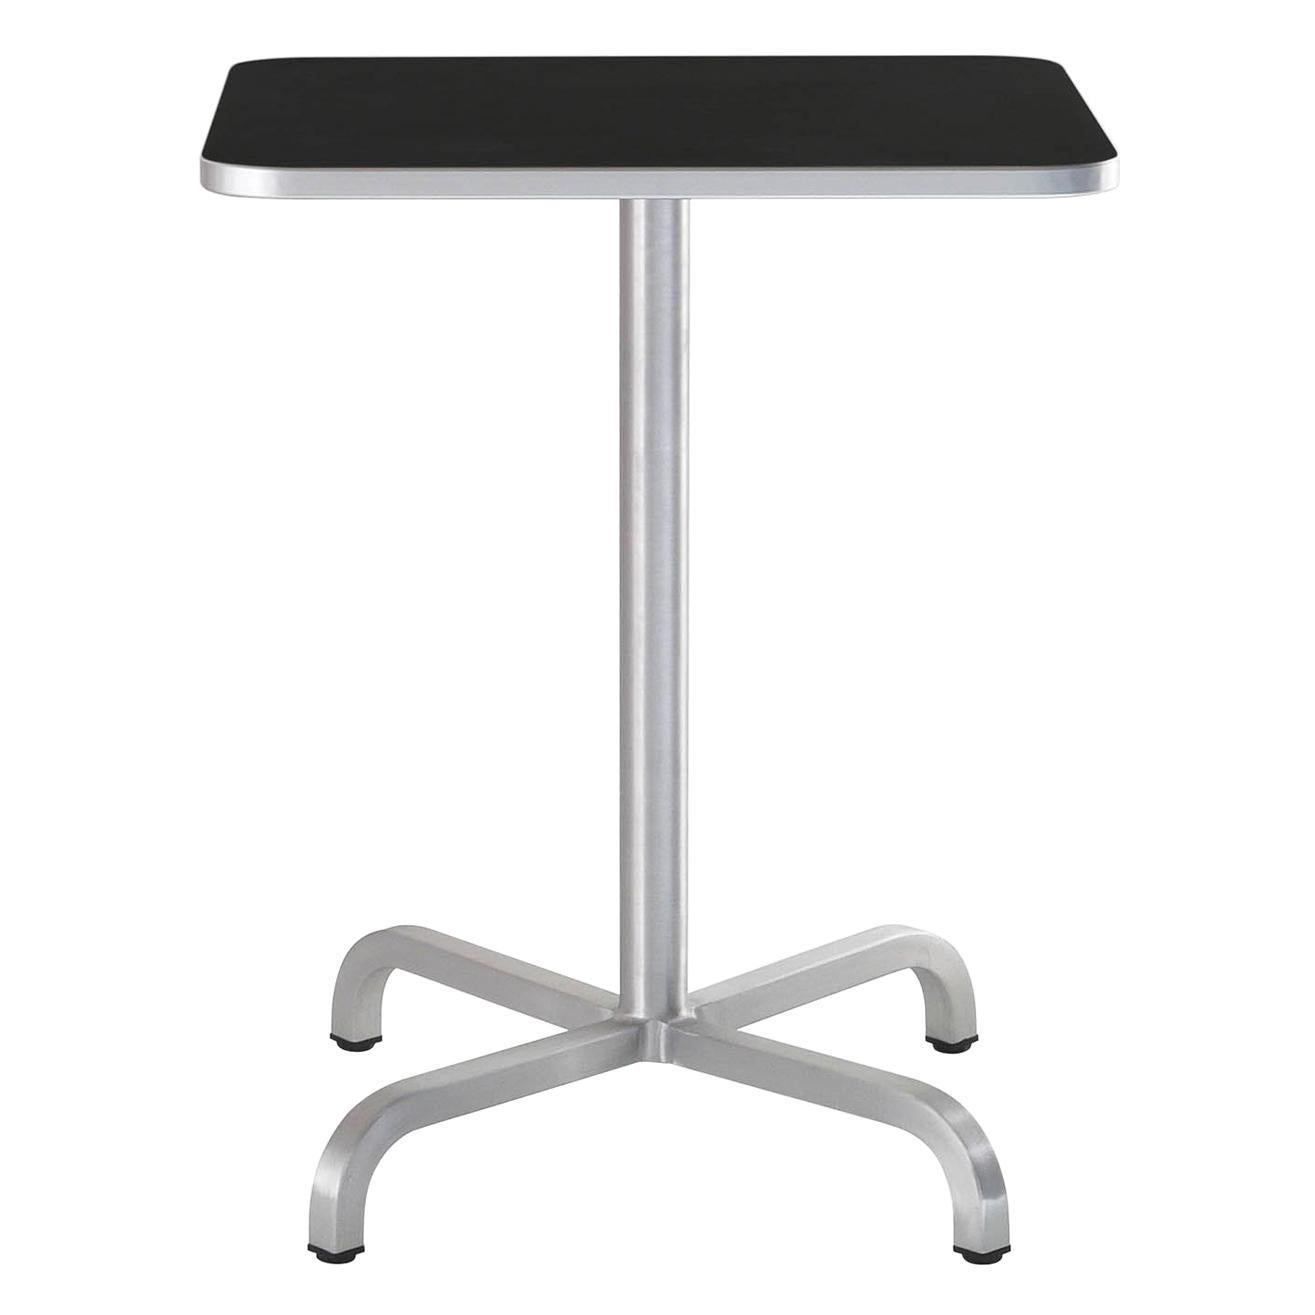 Petite table basse carrée Emeco 20-06 avec plateau en stratifié noir de Norman Foster en vente